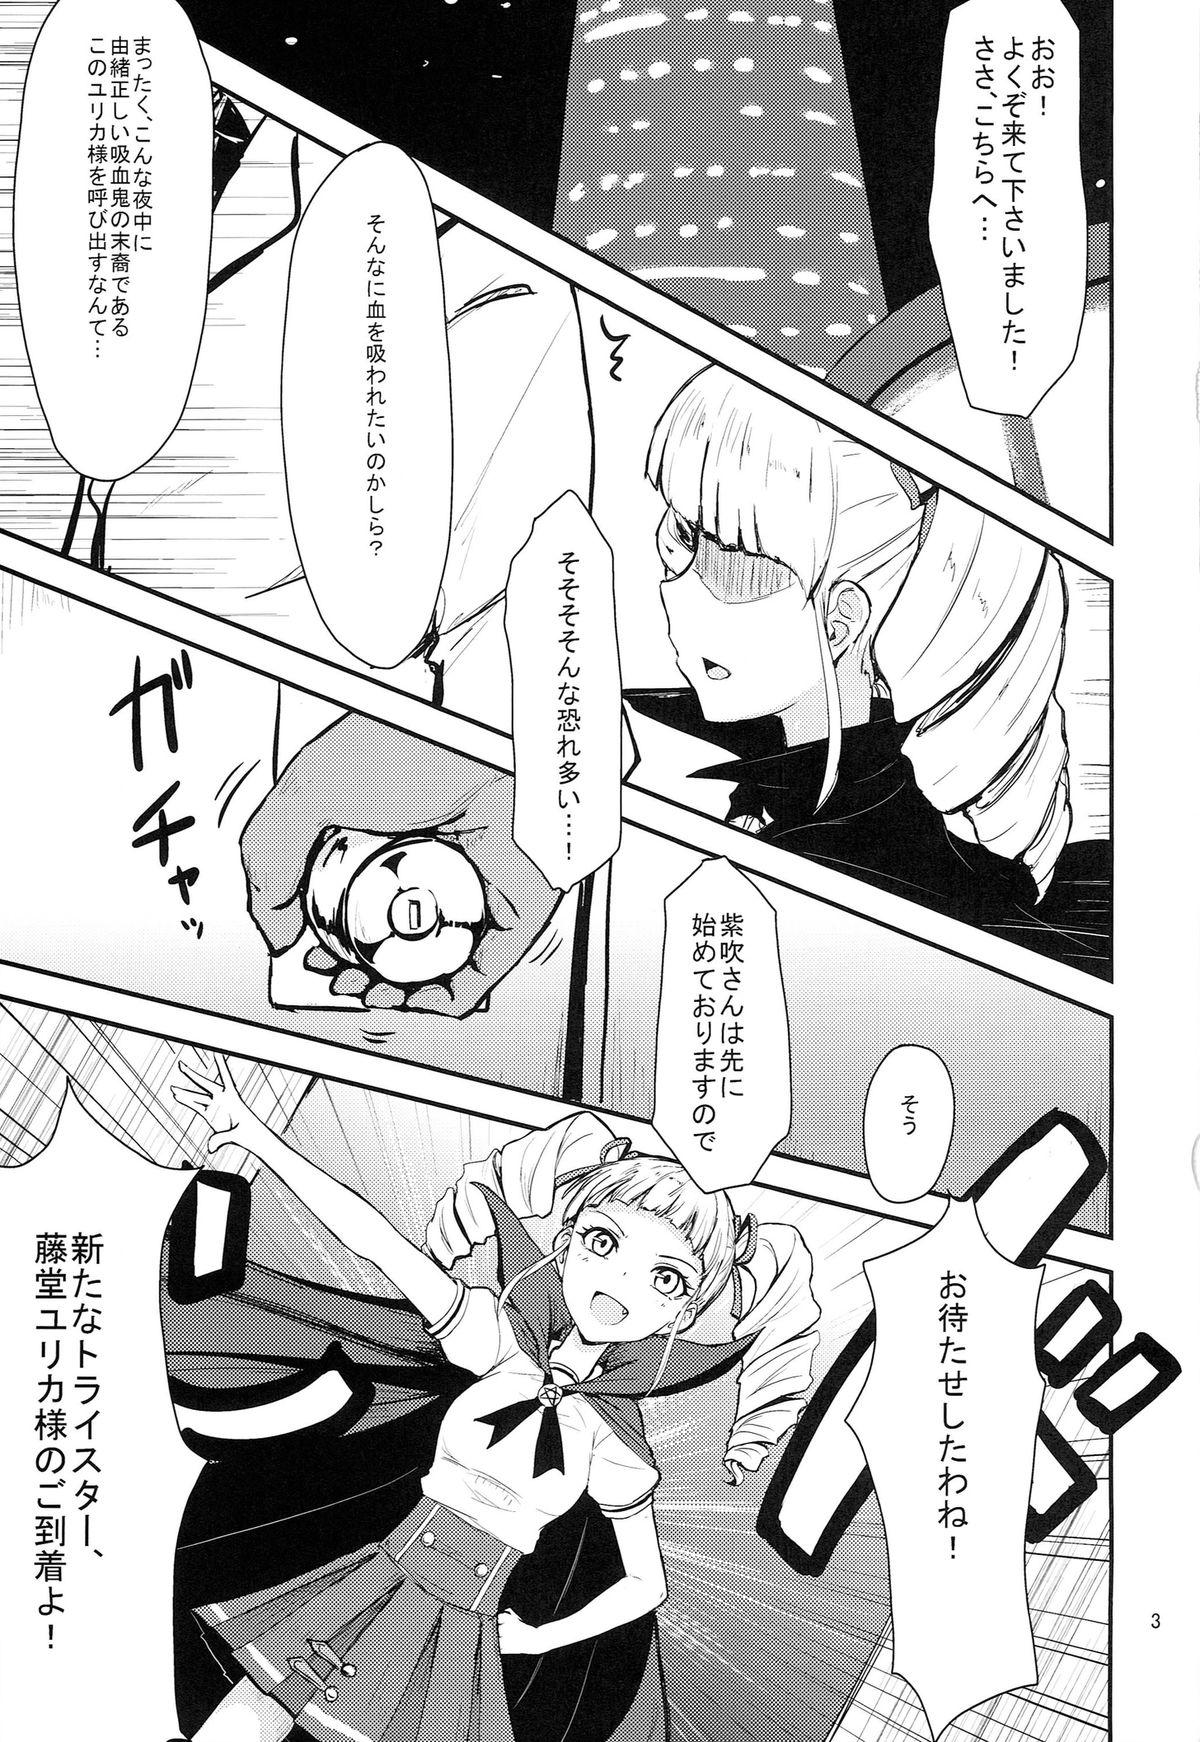 Rica Soreyuke tristar - Aikatsu Monster - Page 3